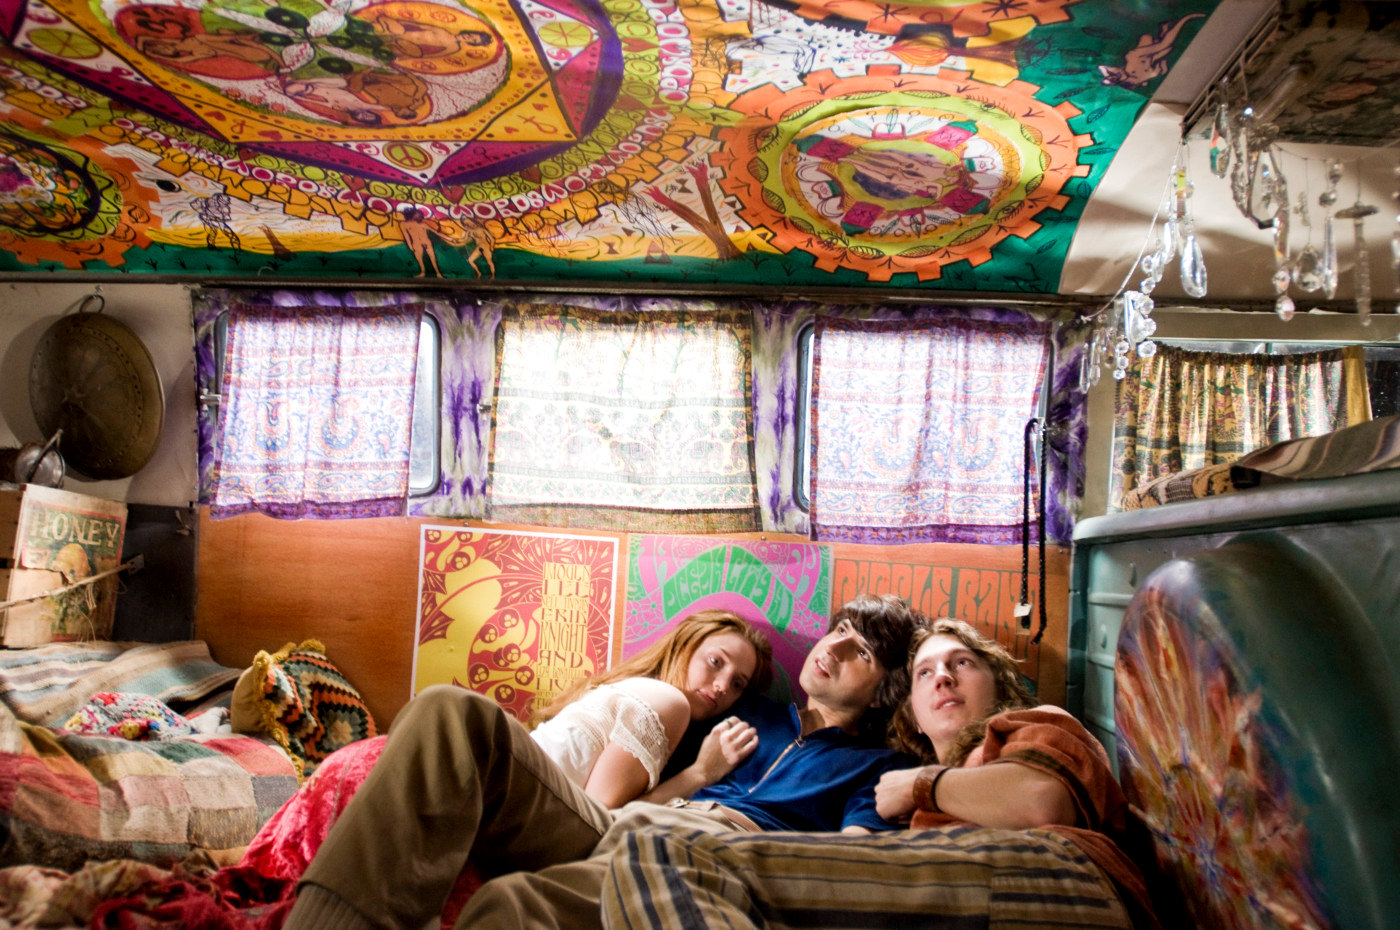 Kelli Garner, Demetri Martin and Paul Dano in Focus Features' Taking Woodstock (2009)